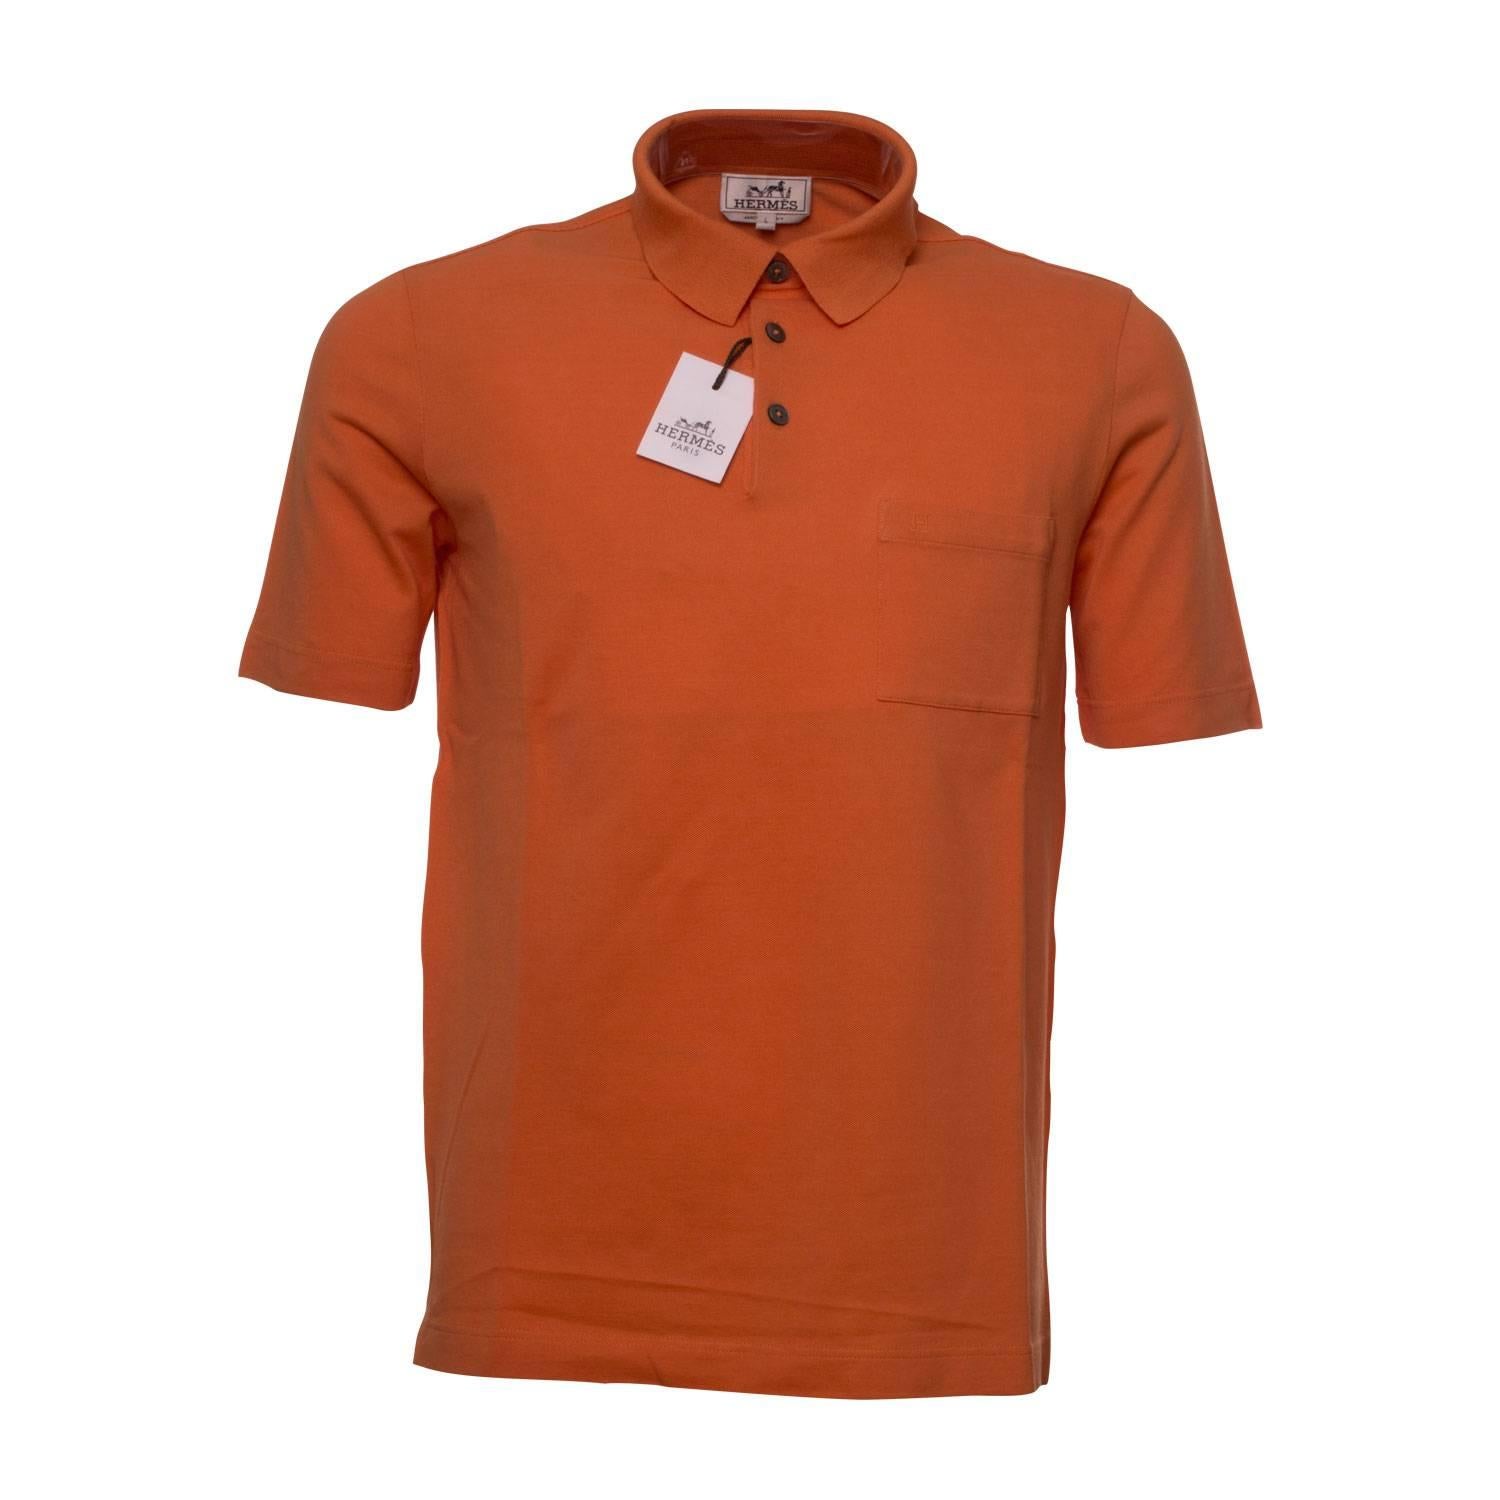 Hermes Polo Boutonne Pique de Cotton Size L Color Orange 2016. For Sale